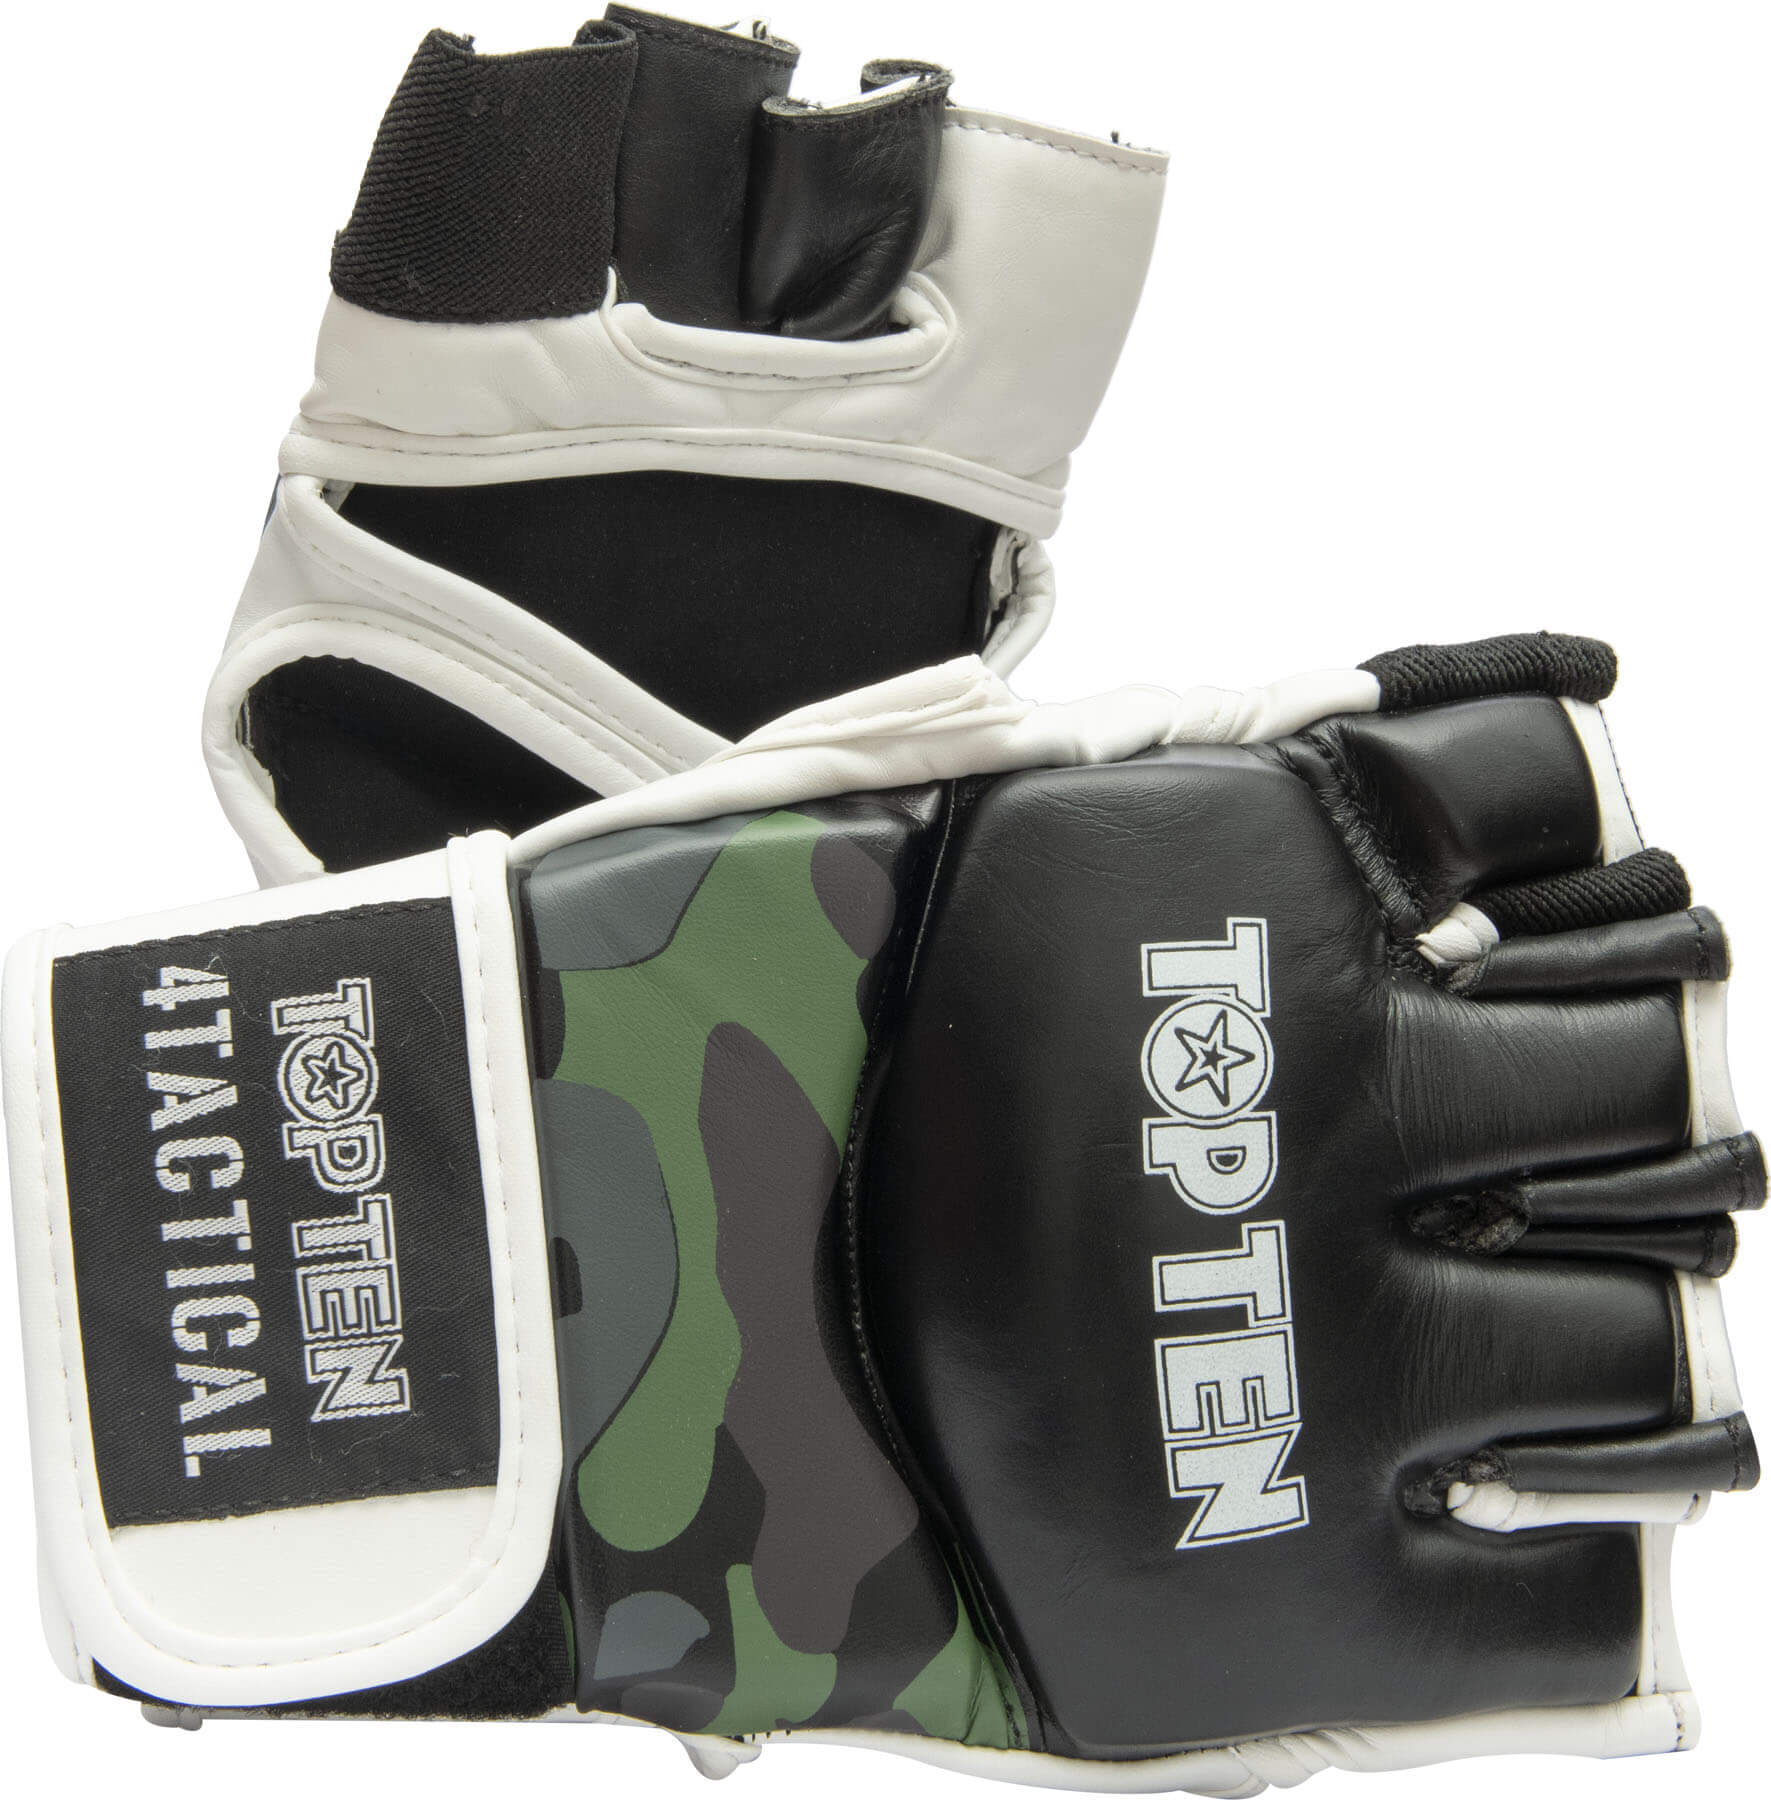 top-ten-gloves-4-tactical-grapling-gloves-black-green-